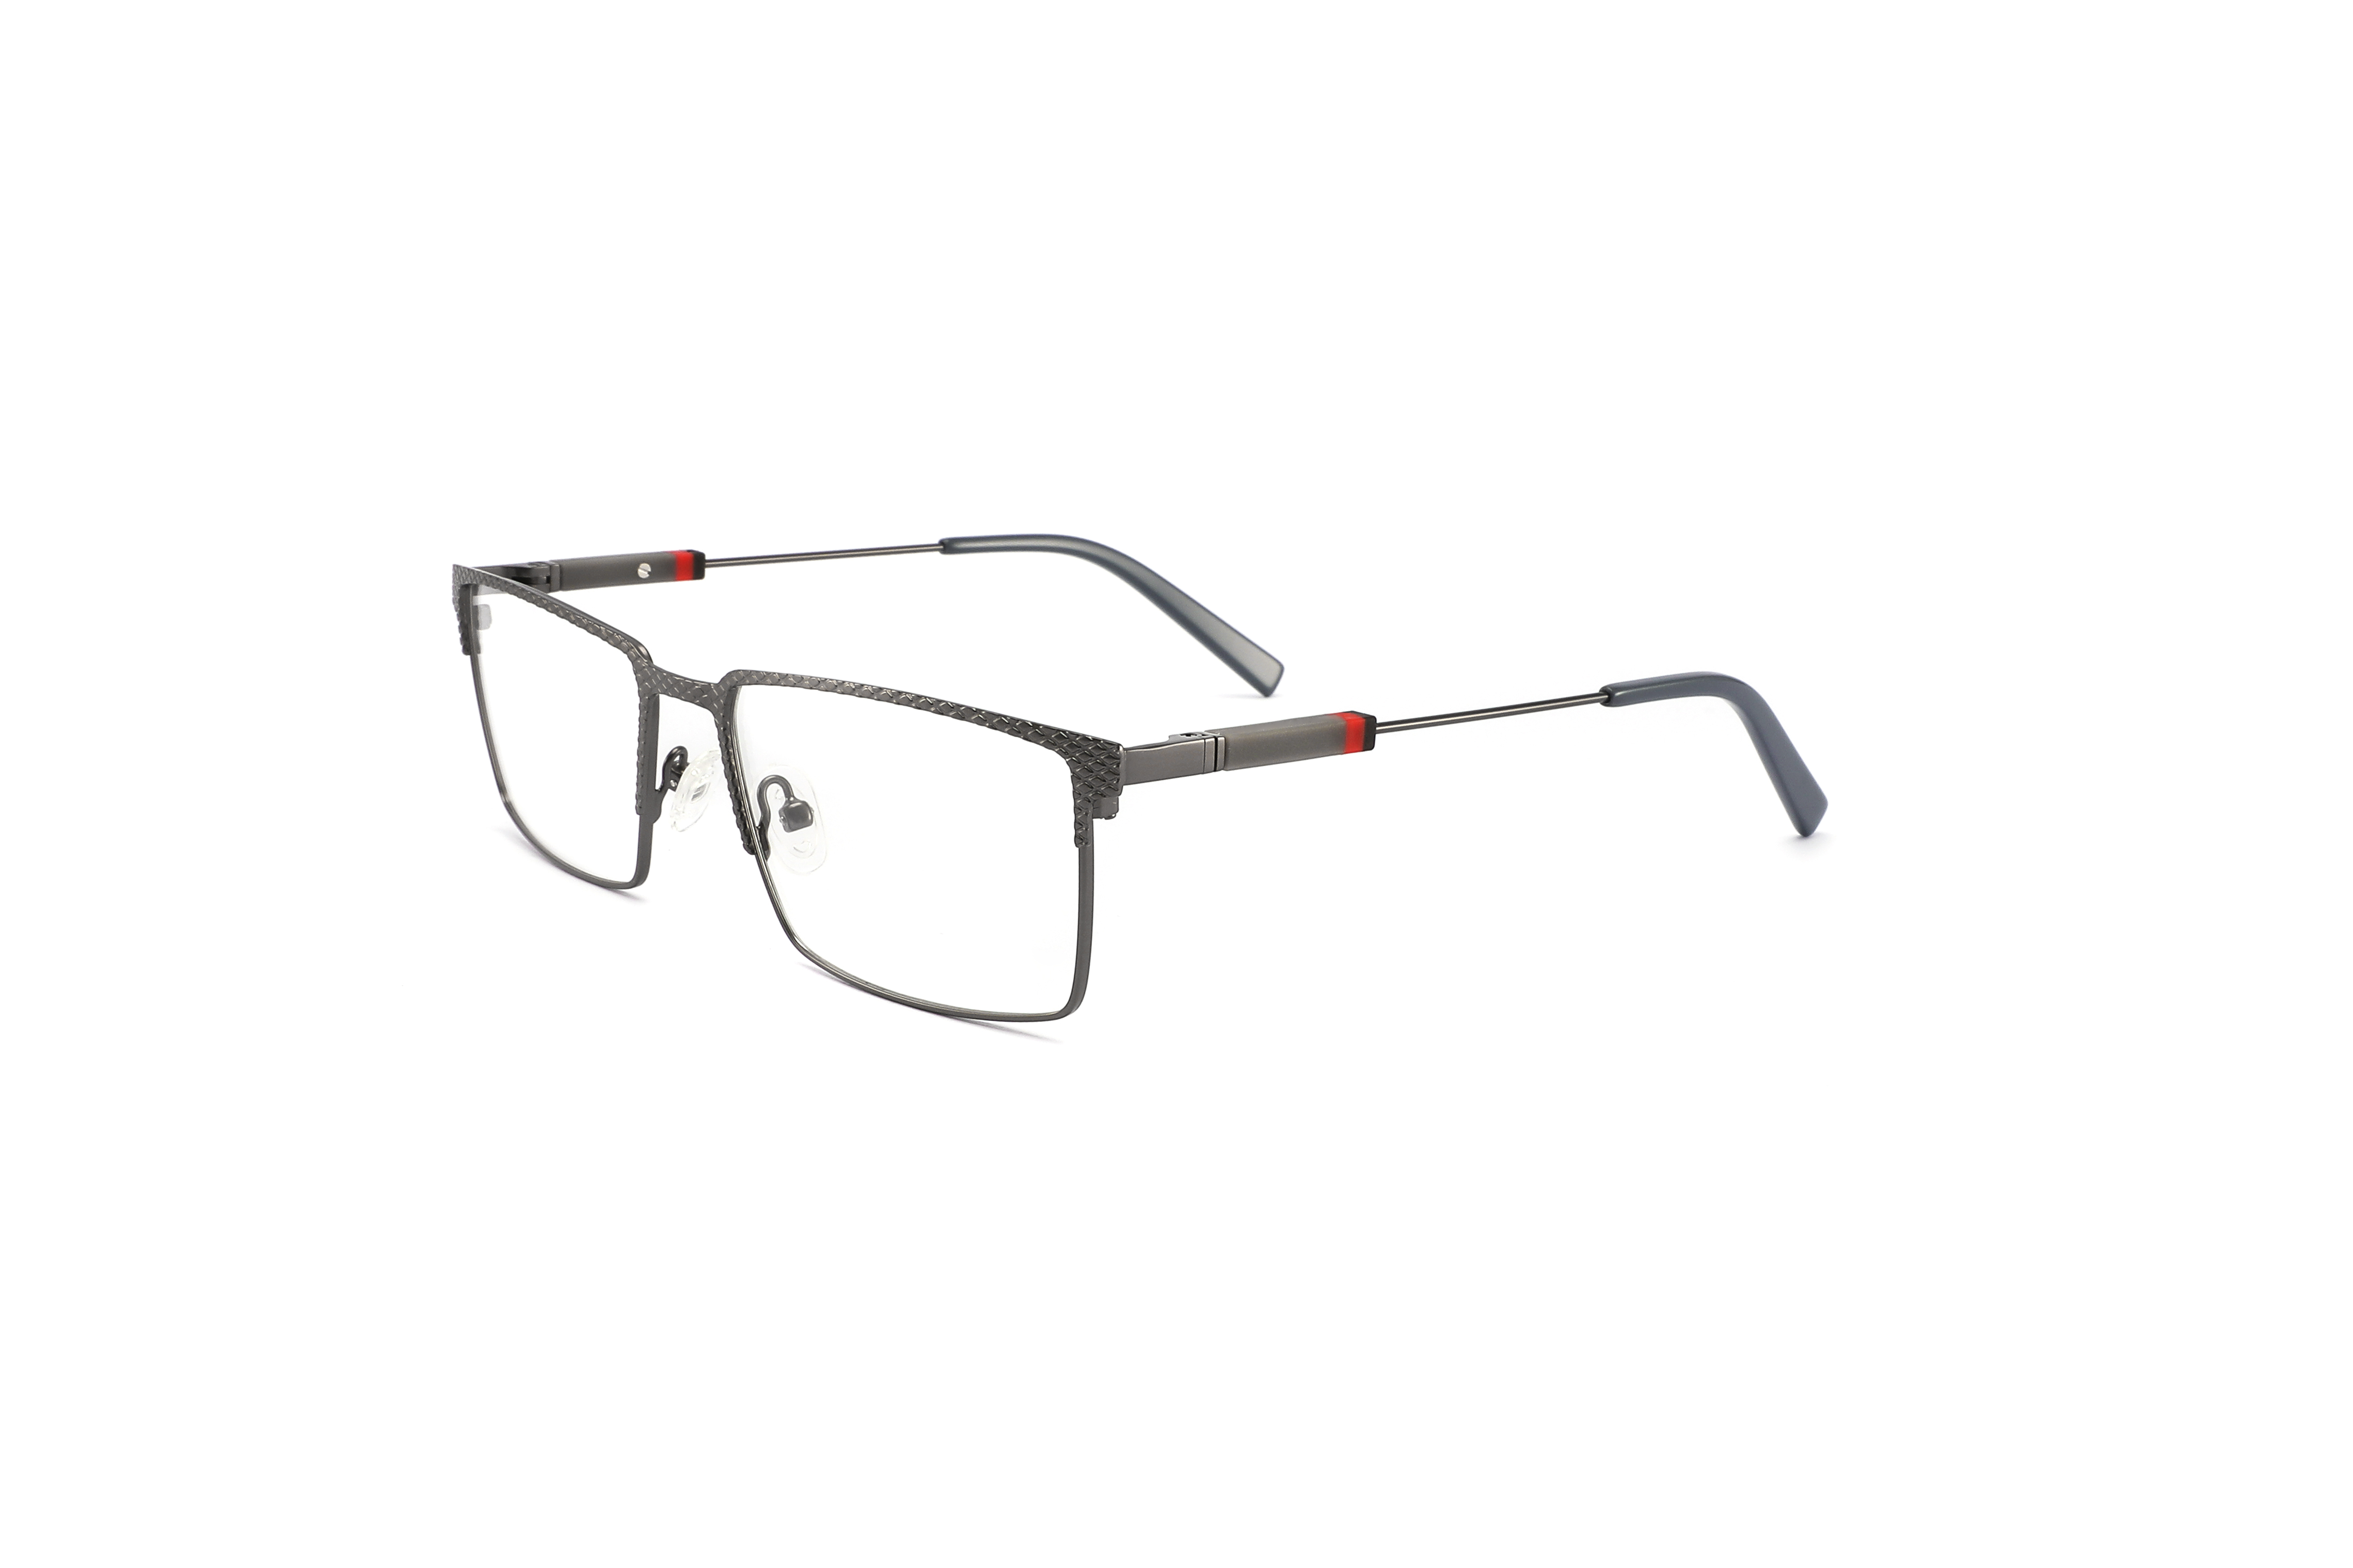 OMG3803 metal optical frames for men